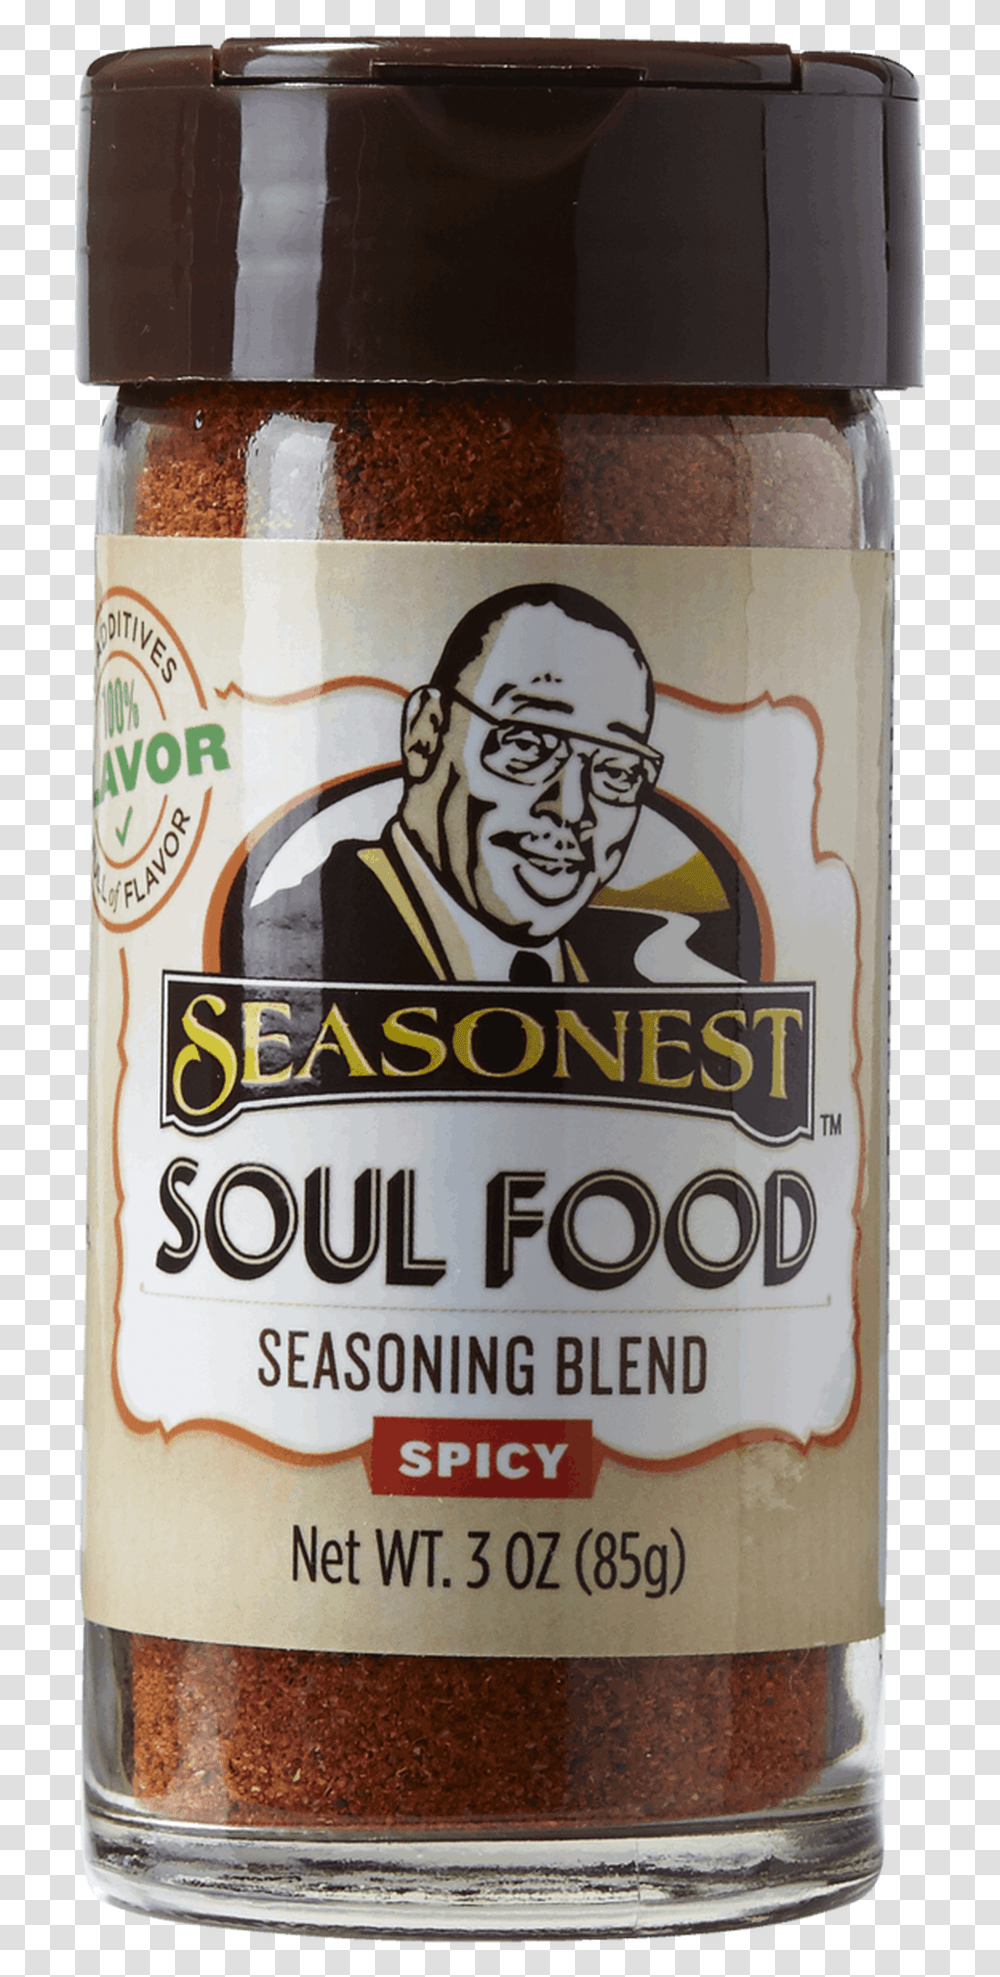 Seasonest Soul Food Spicy Seasoning Blend Soul Food Spice, Beverage, Beer, Alcohol, Bottle Transparent Png